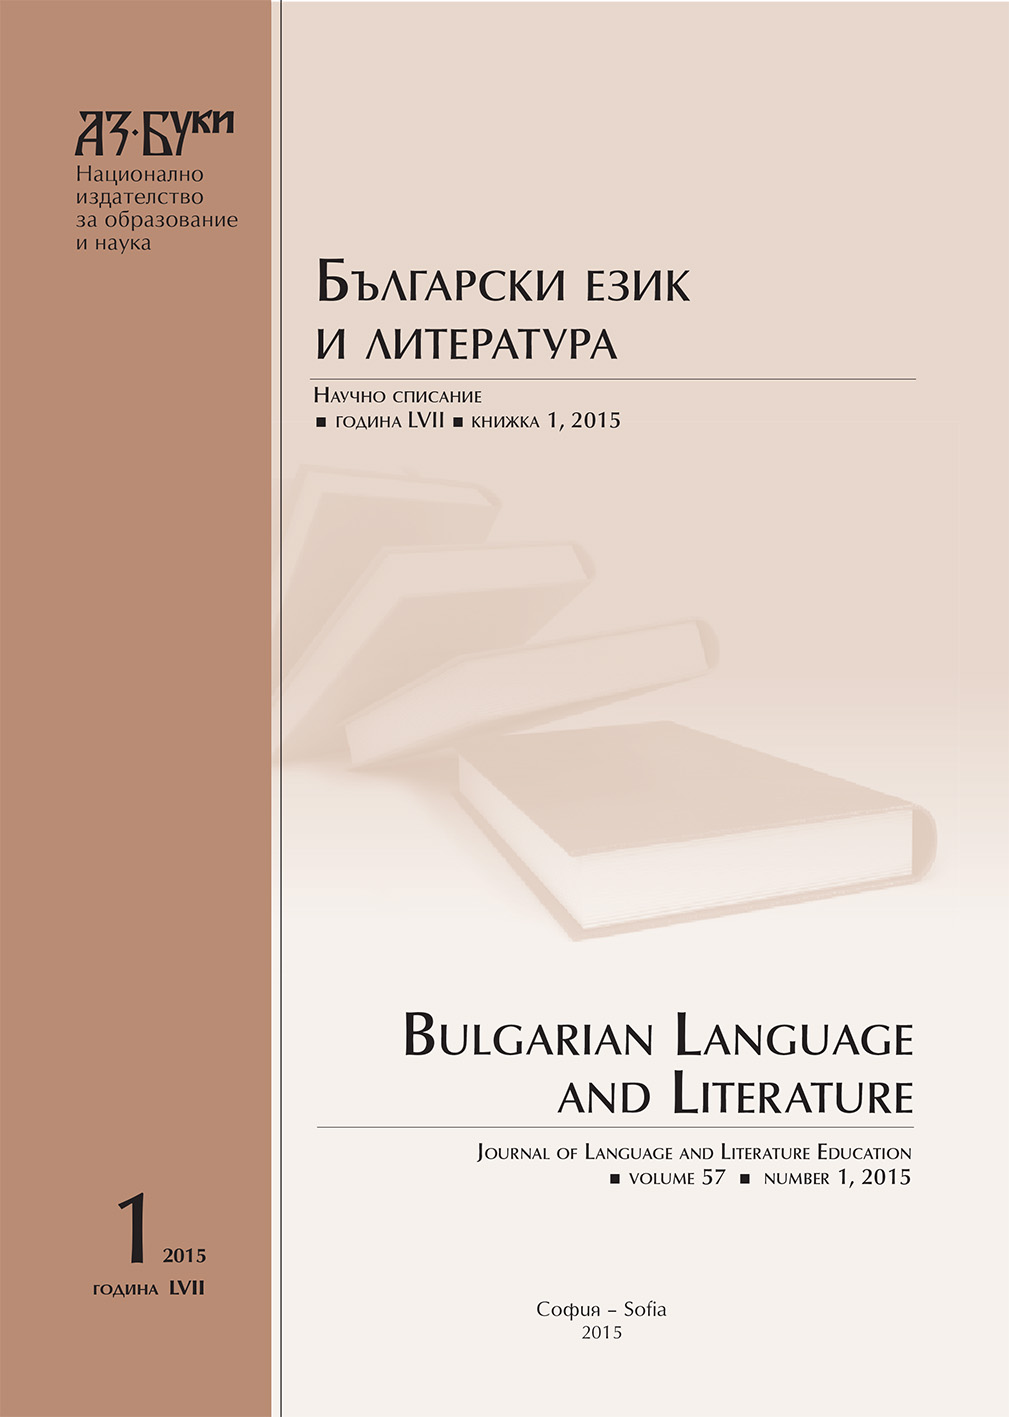 Учебният проект по български език и литература като средство за формиране на гражданска култура